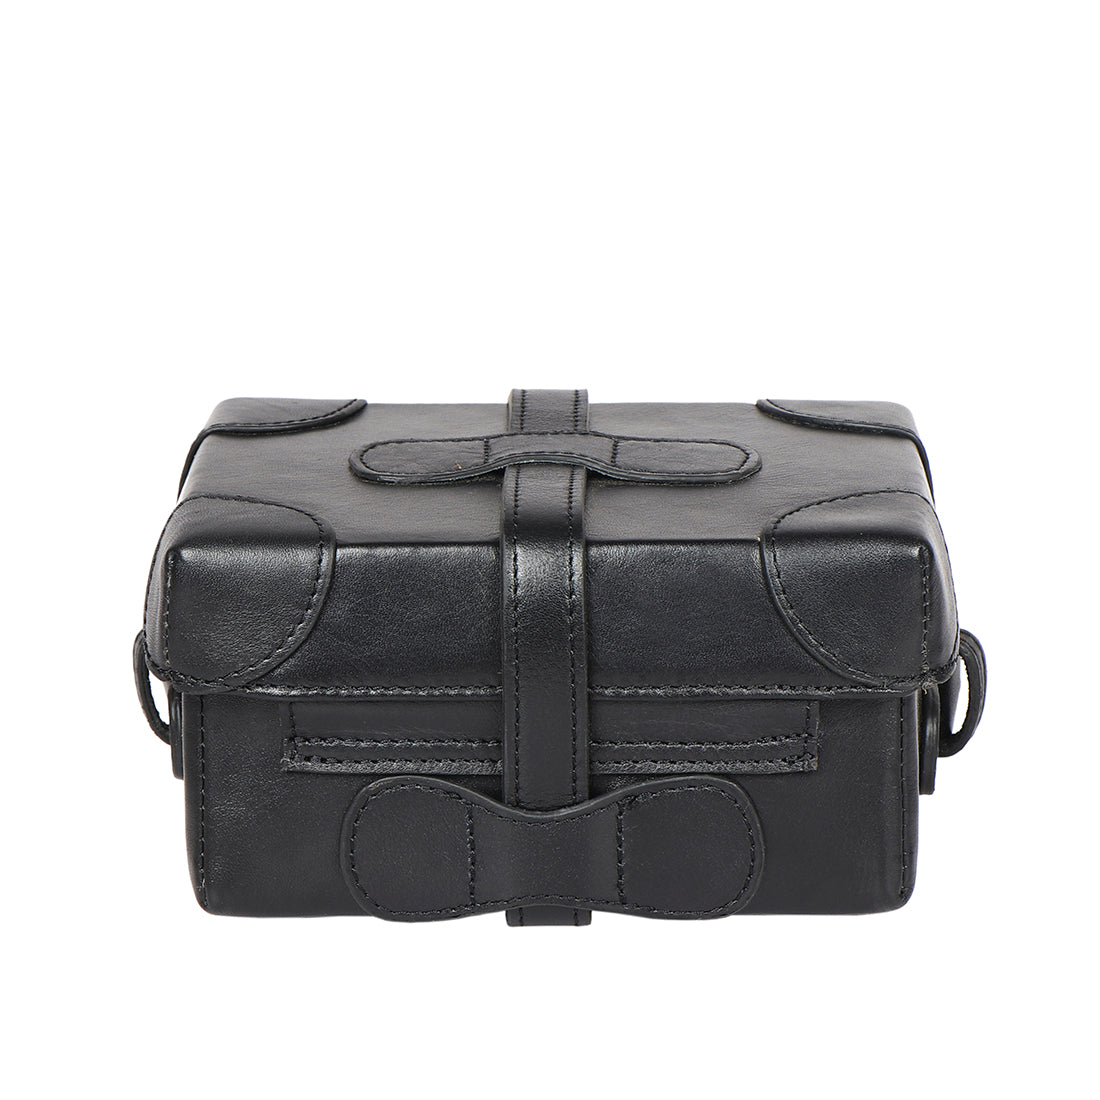 Buy Exotic Mini Black Sling Bag For Girls Women SB51 Online at